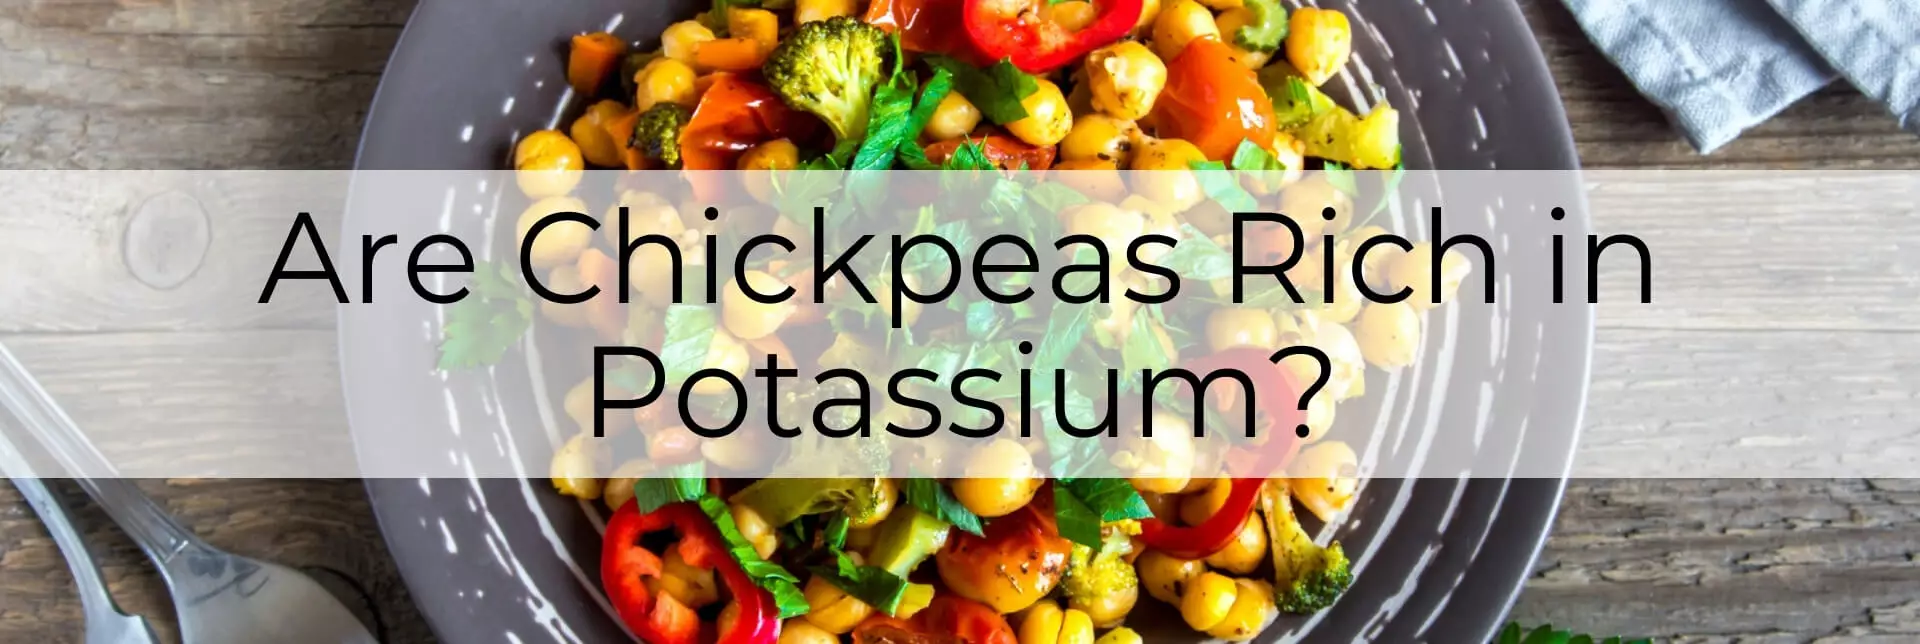 potassium in chickpeas main-post-image